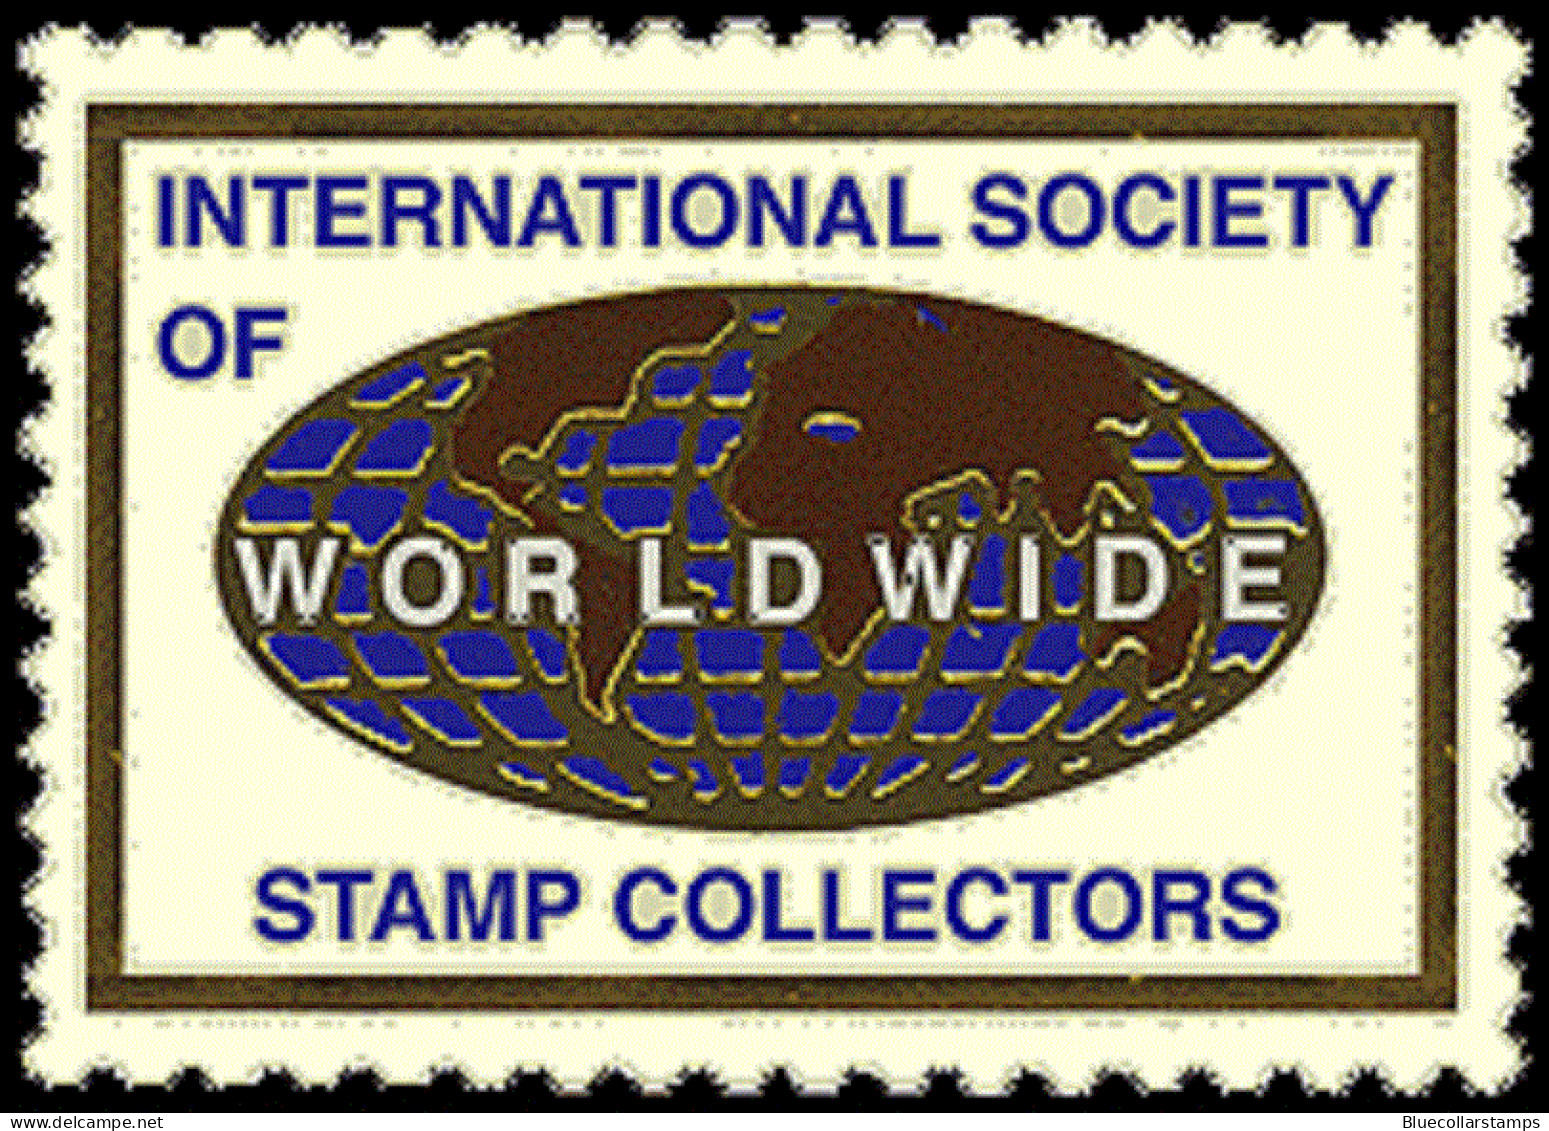 Ecuador, Stamp, Scott#56, Mint, Hinged, Dos Centavos, Ship. - Ecuador